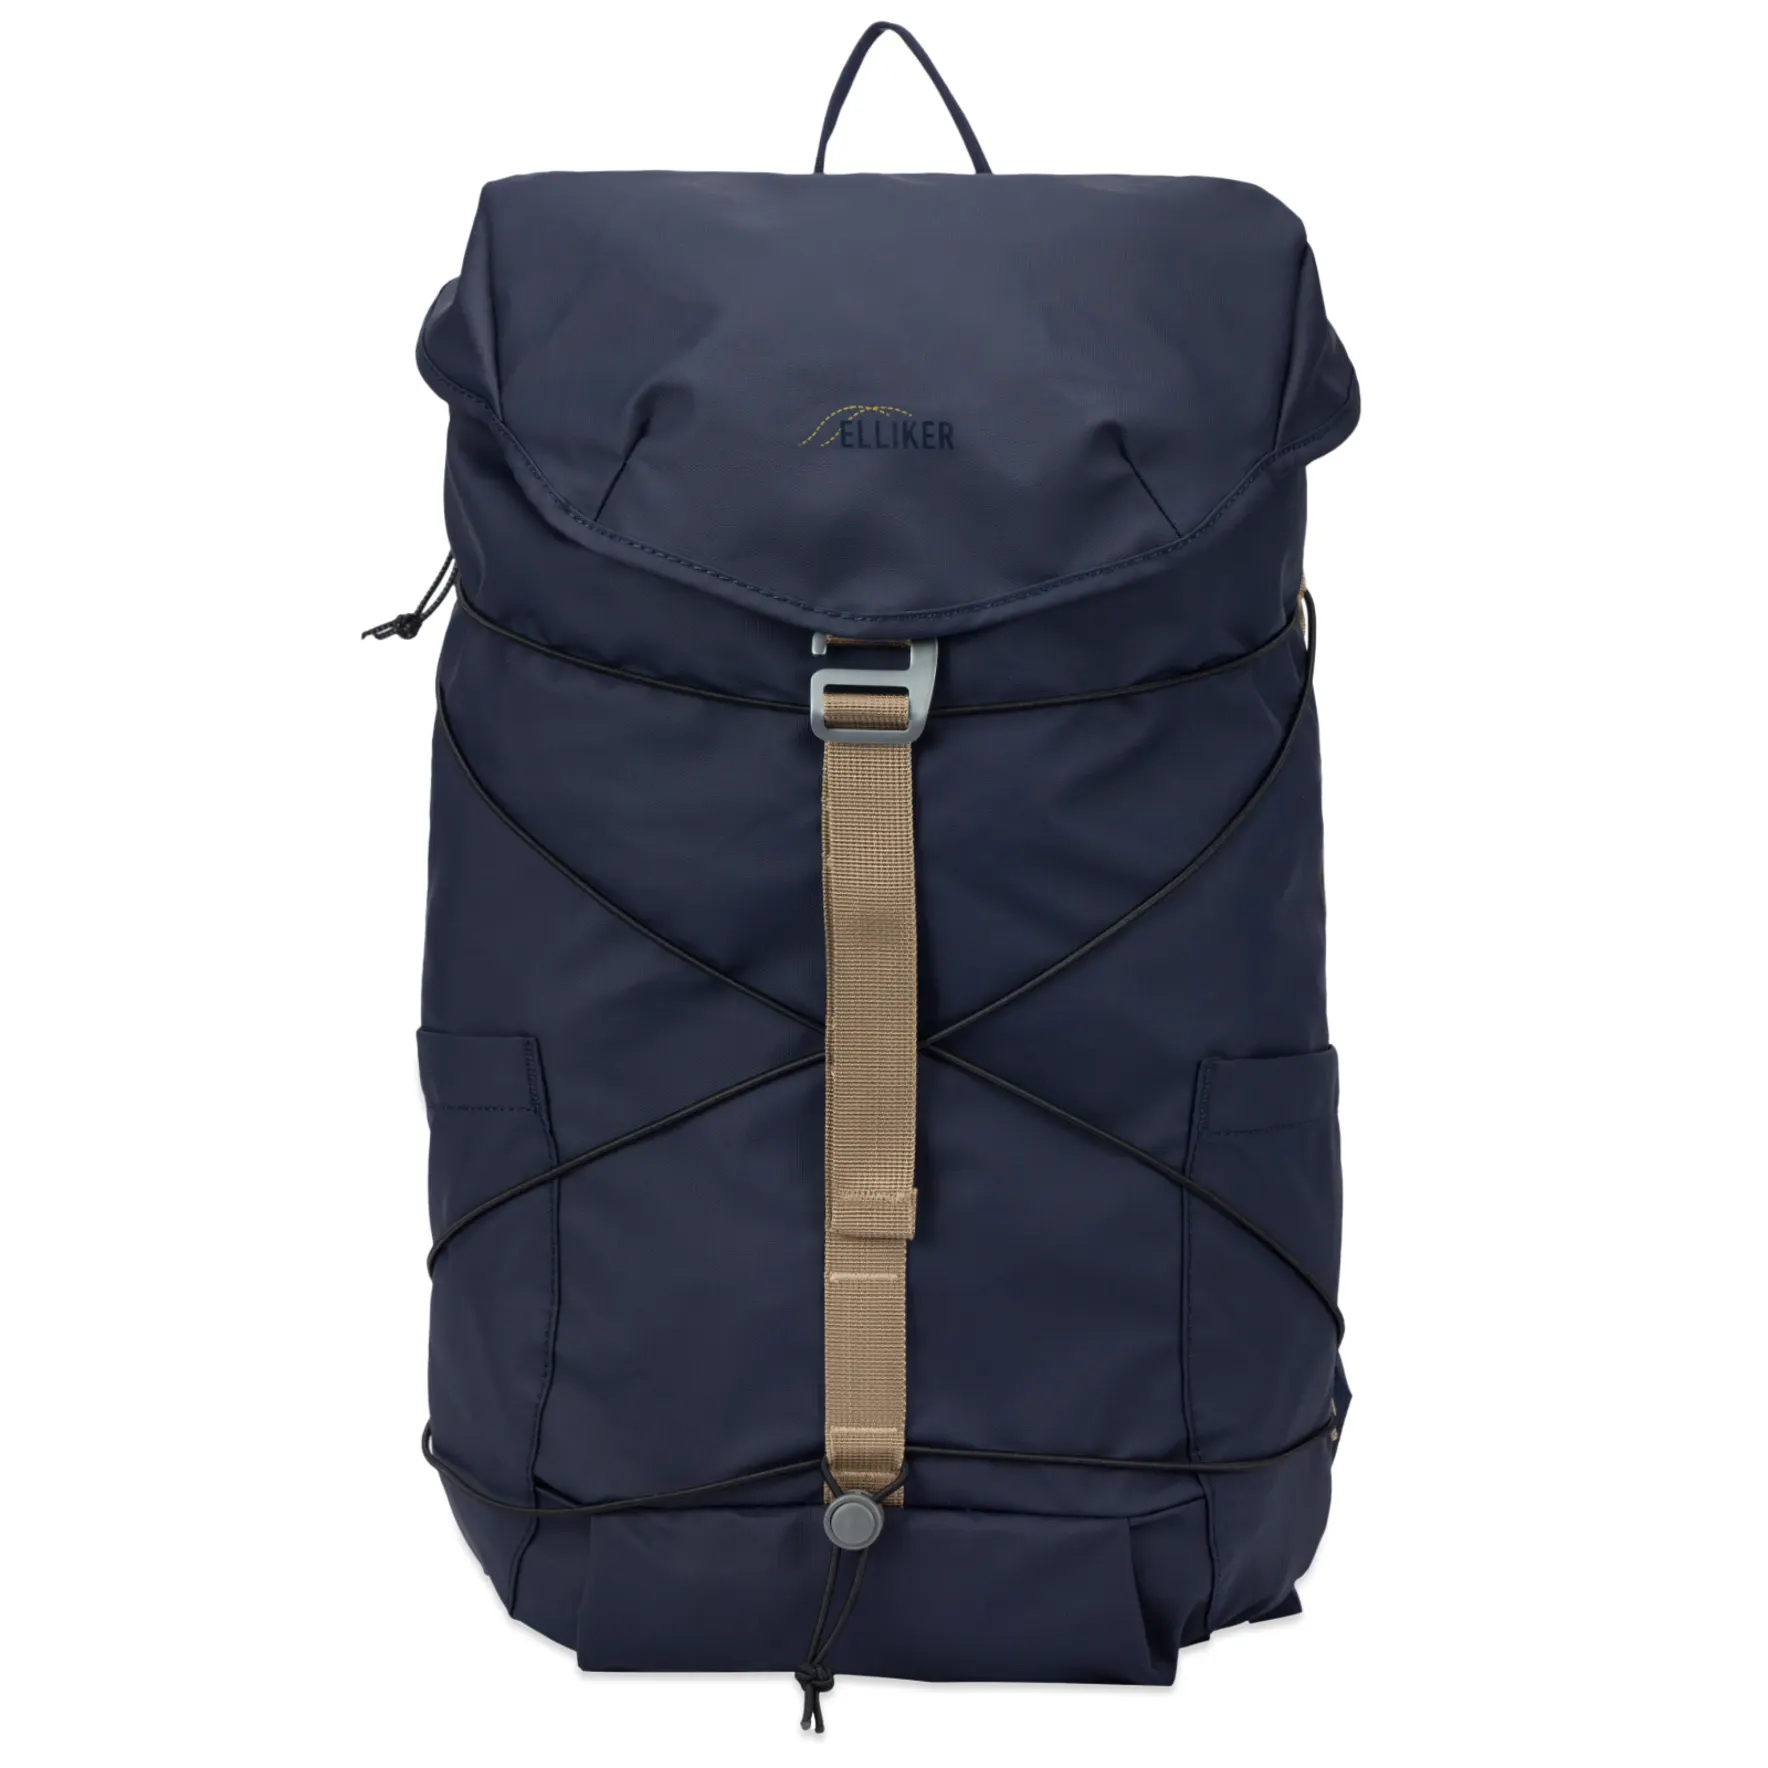 Рюкзак Elliker Wharfe Flapover Backpack, темно-синий рюкзак elliker dayle green